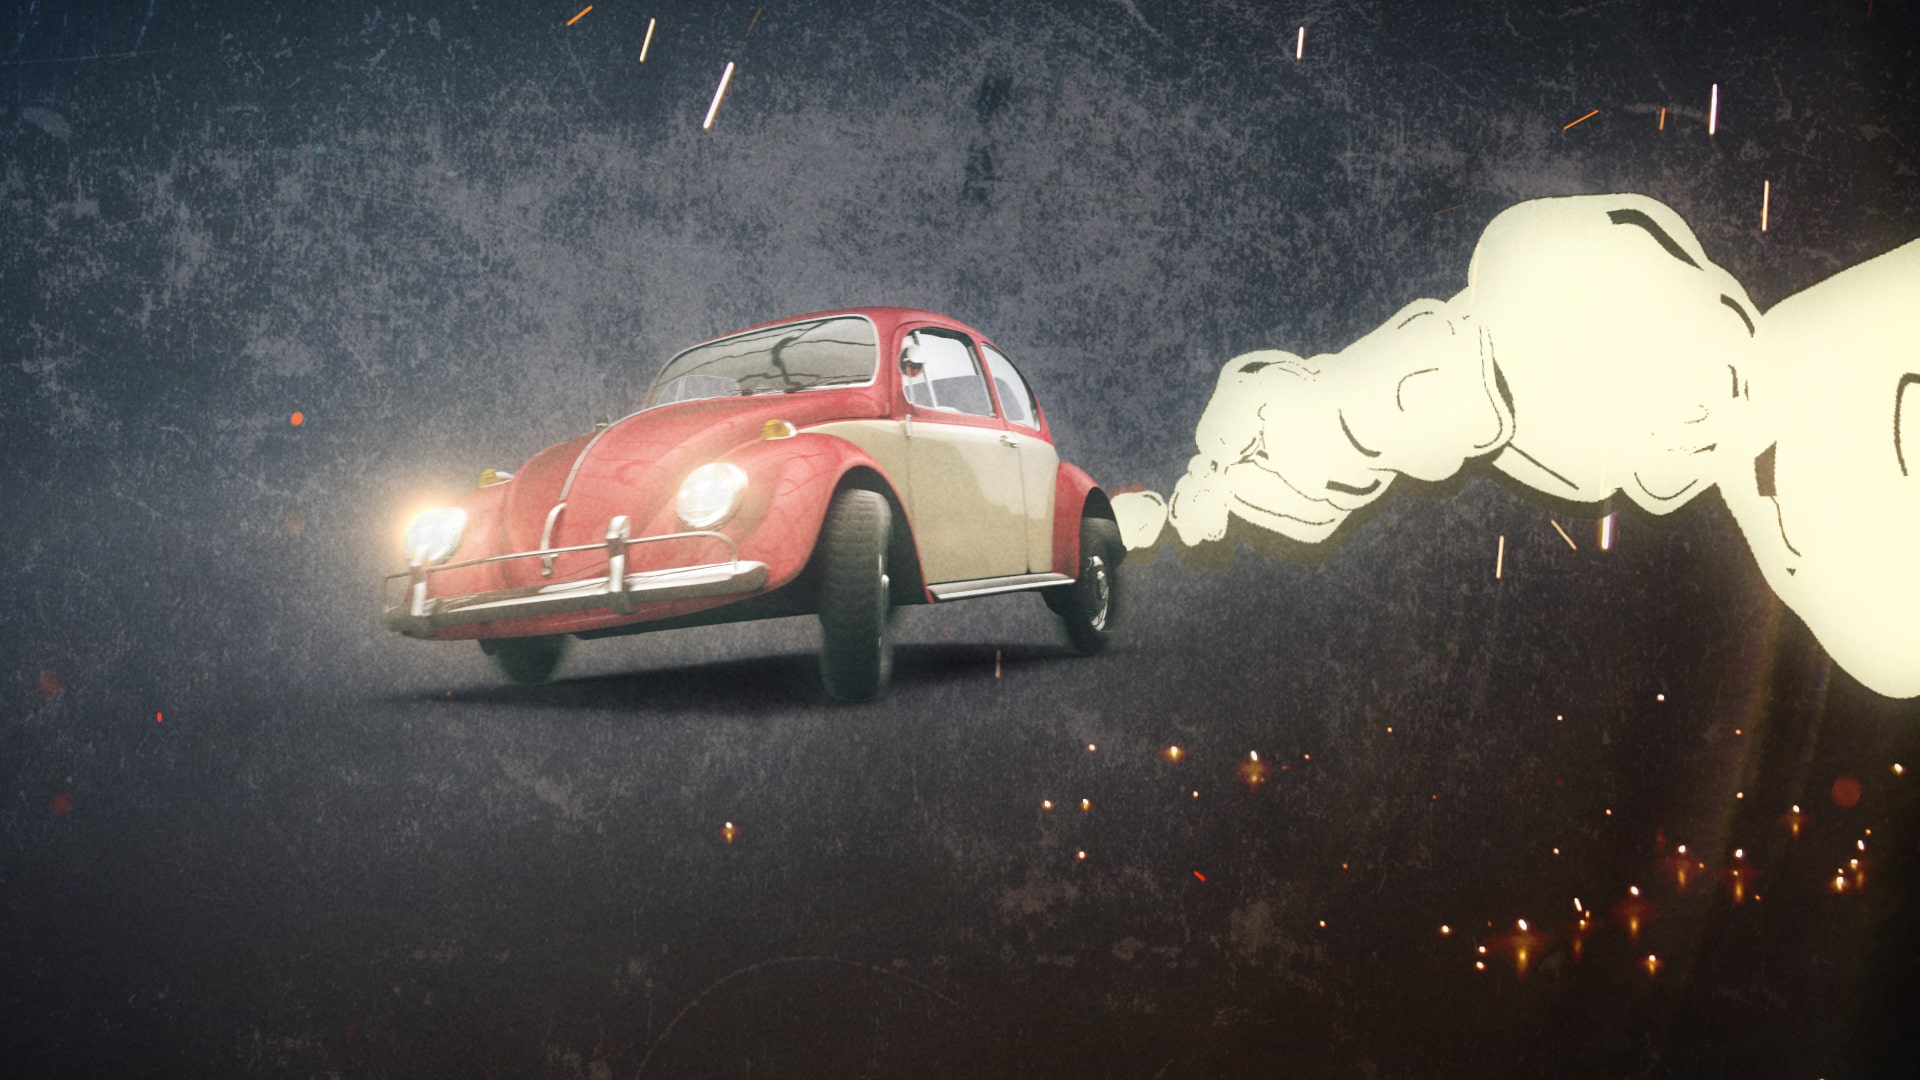 Bild aus Trailer, Vw Käfer mit gezeichneter Wolke